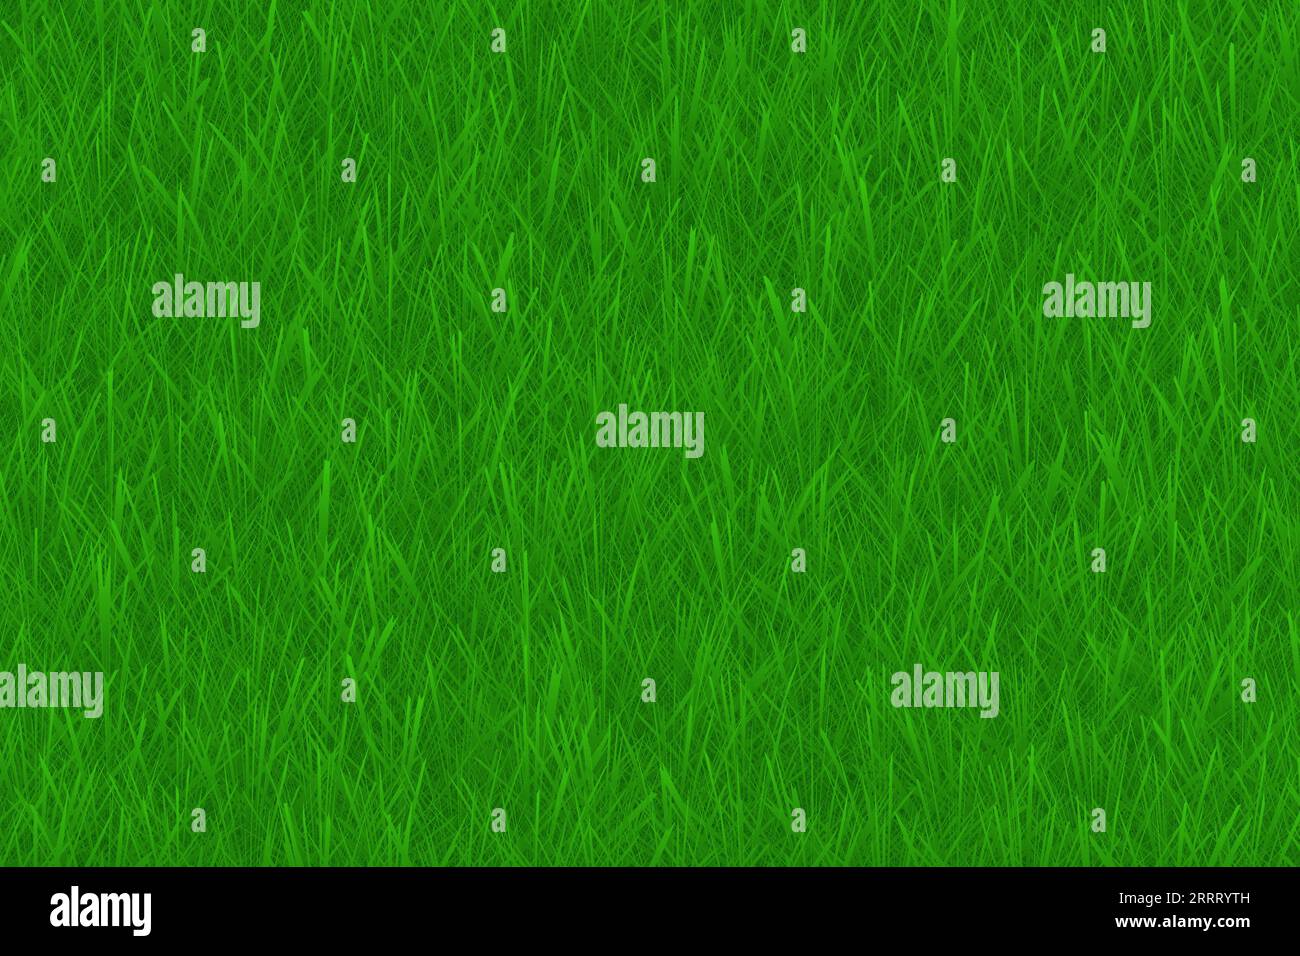 Realistische grüne Grastextur Hintergrundvektorgrafik Stock Vektor